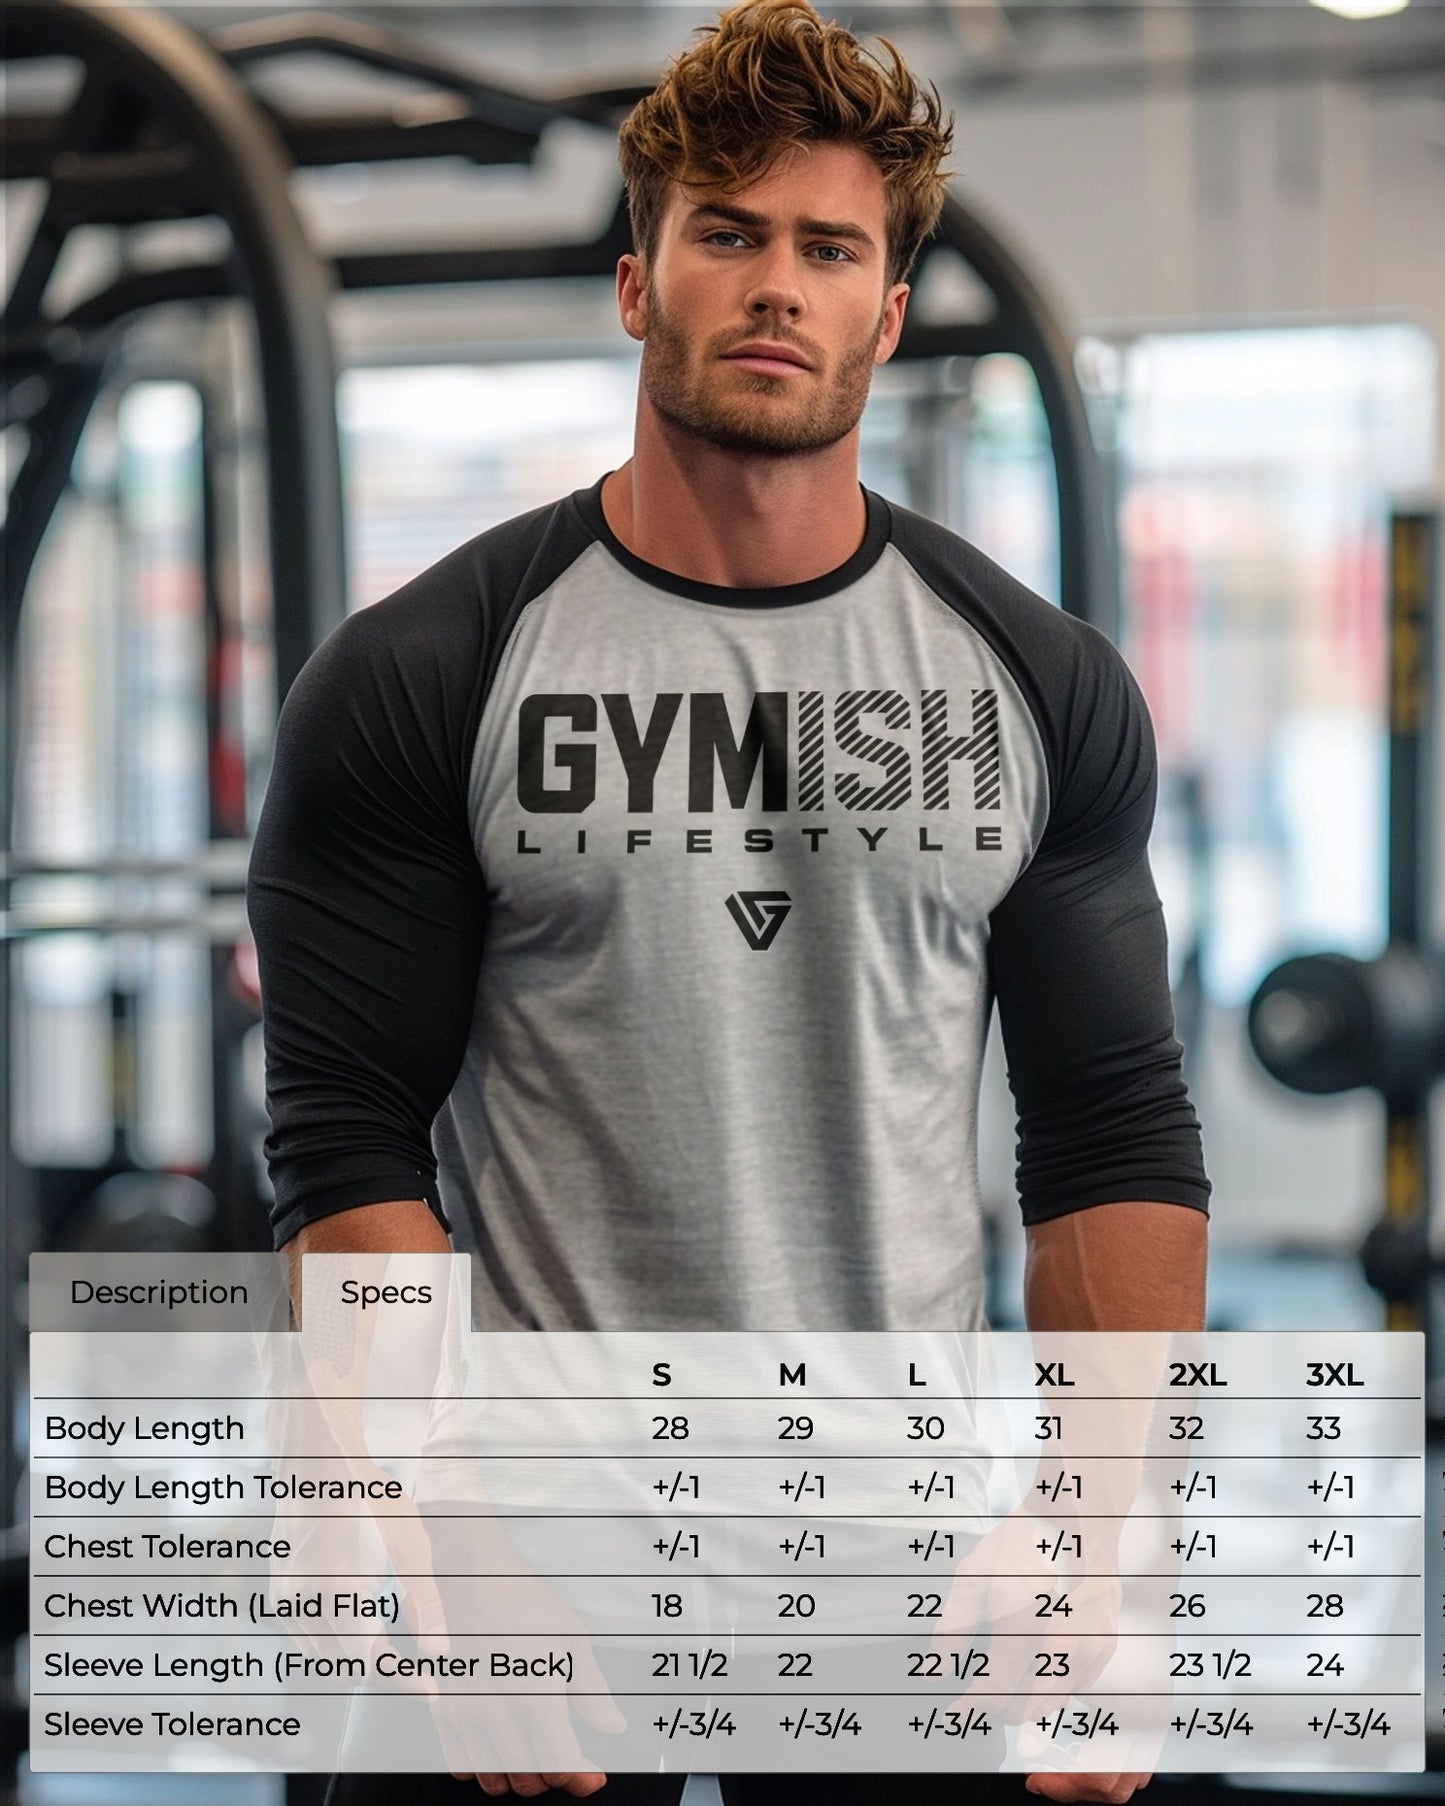 37- RAGLAN Hulking Up Workout Gym T-Shirt for Men